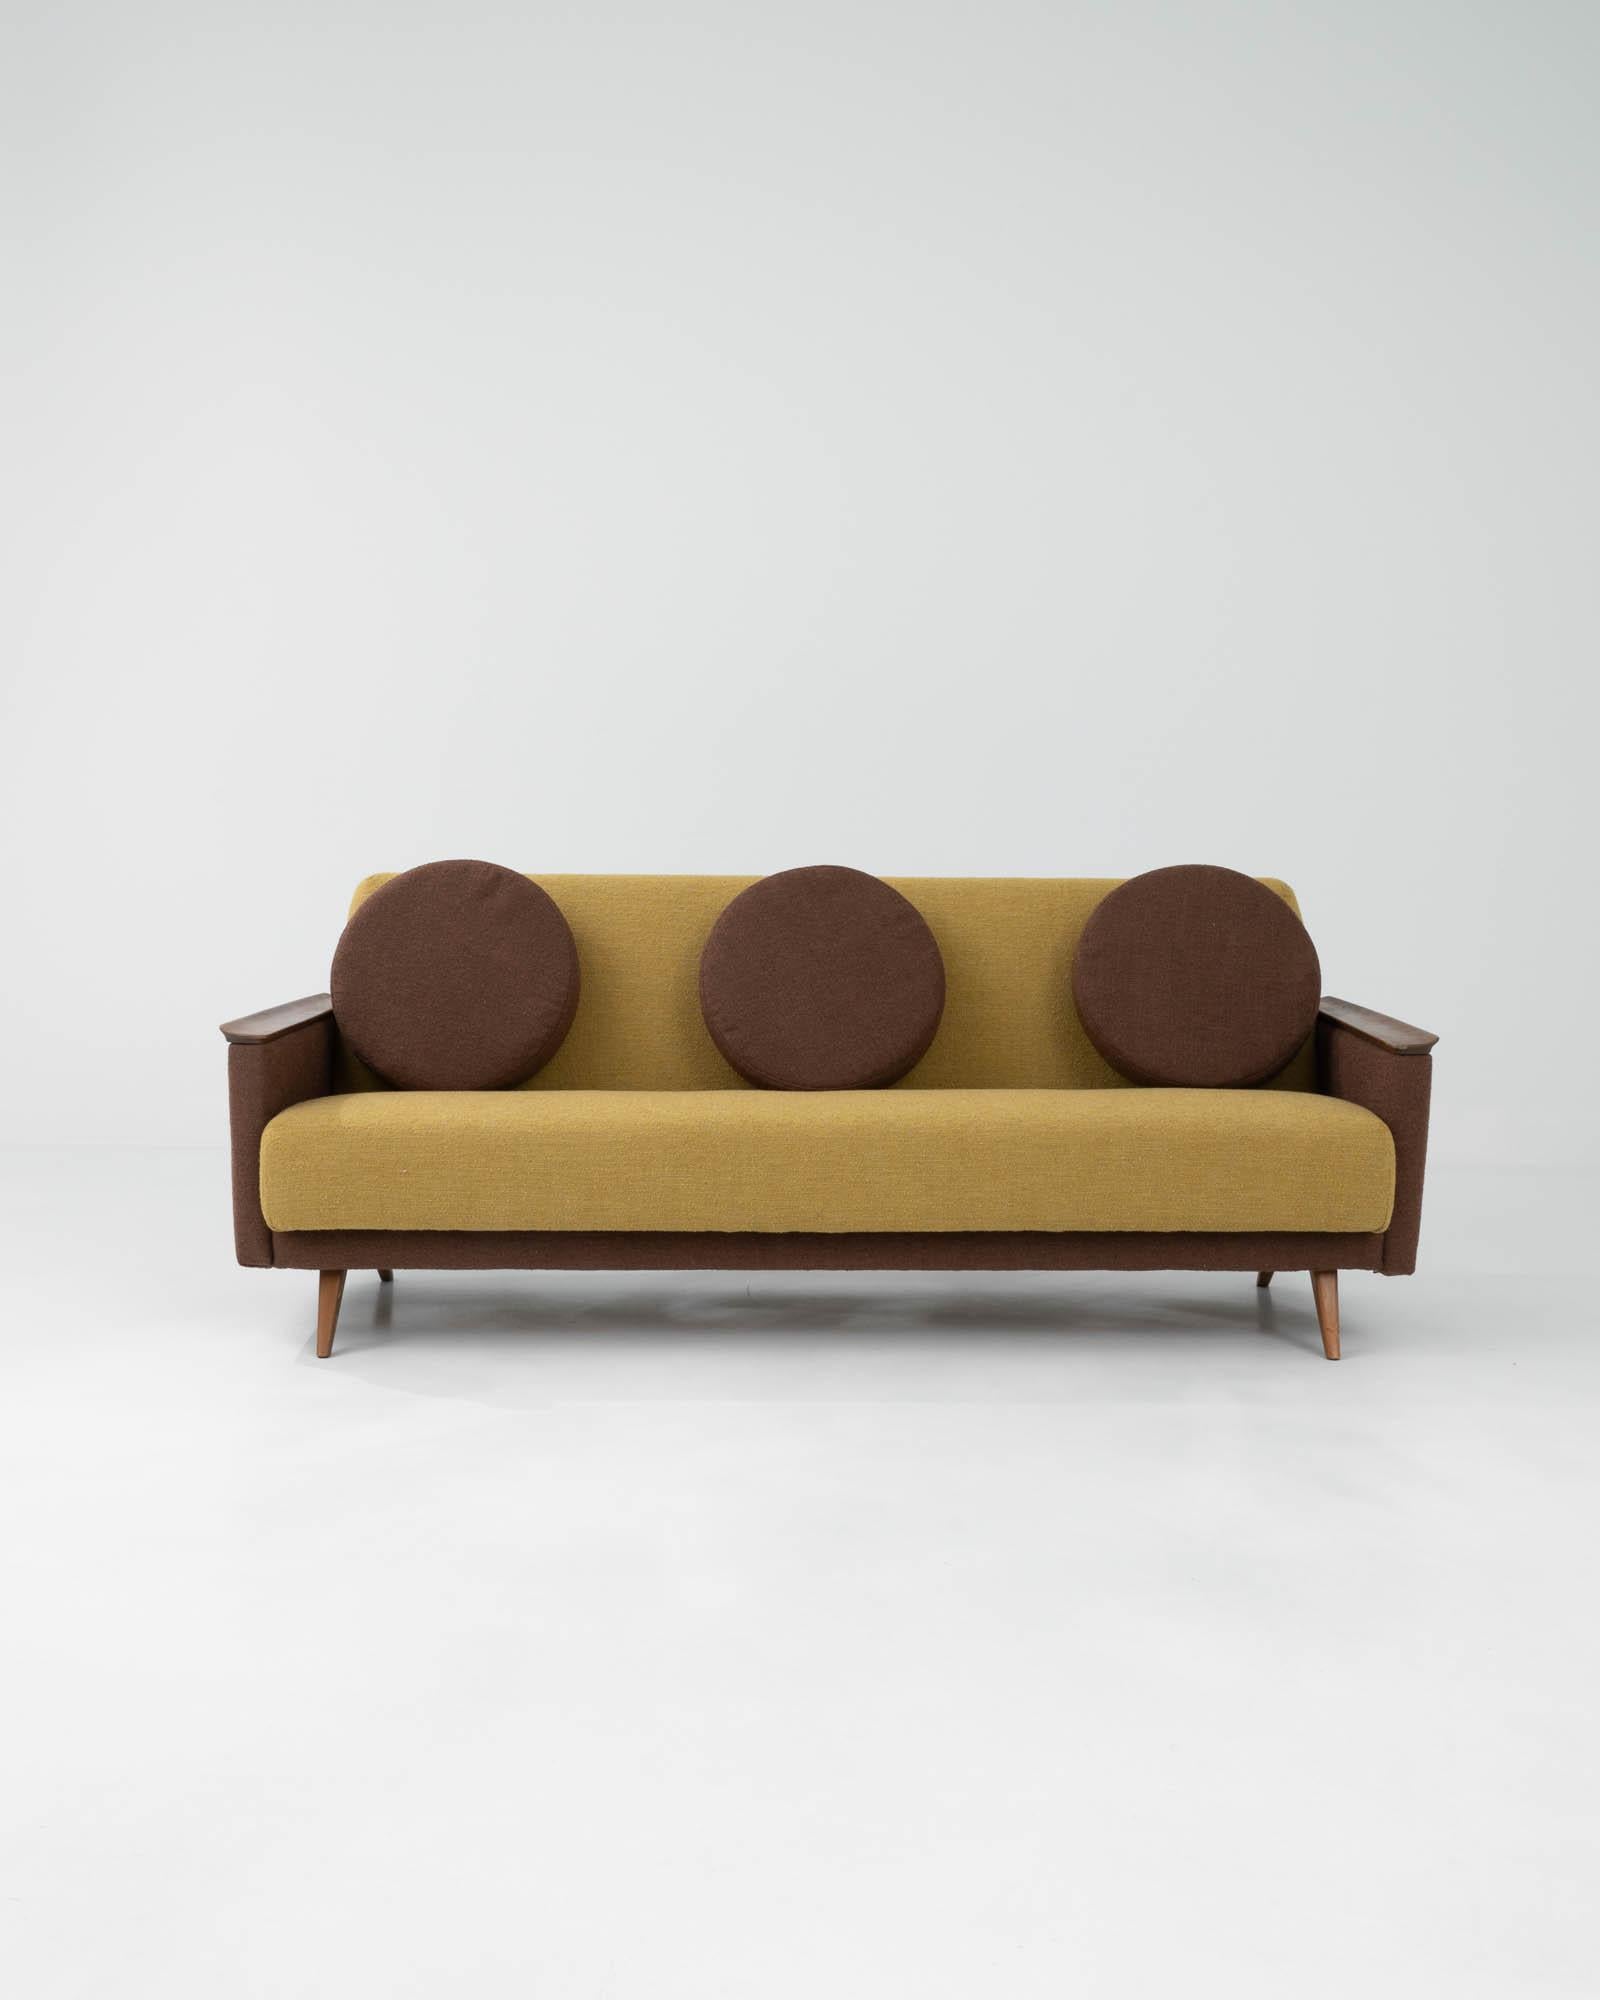 Dieses im 20. Jahrhundert hergestellte Vintage-Sofa verbindet auf wunderbare Weise die skurrile Ästhetik der Mitte des Jahrhunderts mit dem funktionalen Minimalismus skandinavischer Möbel. Sein Design kombiniert kantige und runde Elemente, zeigt